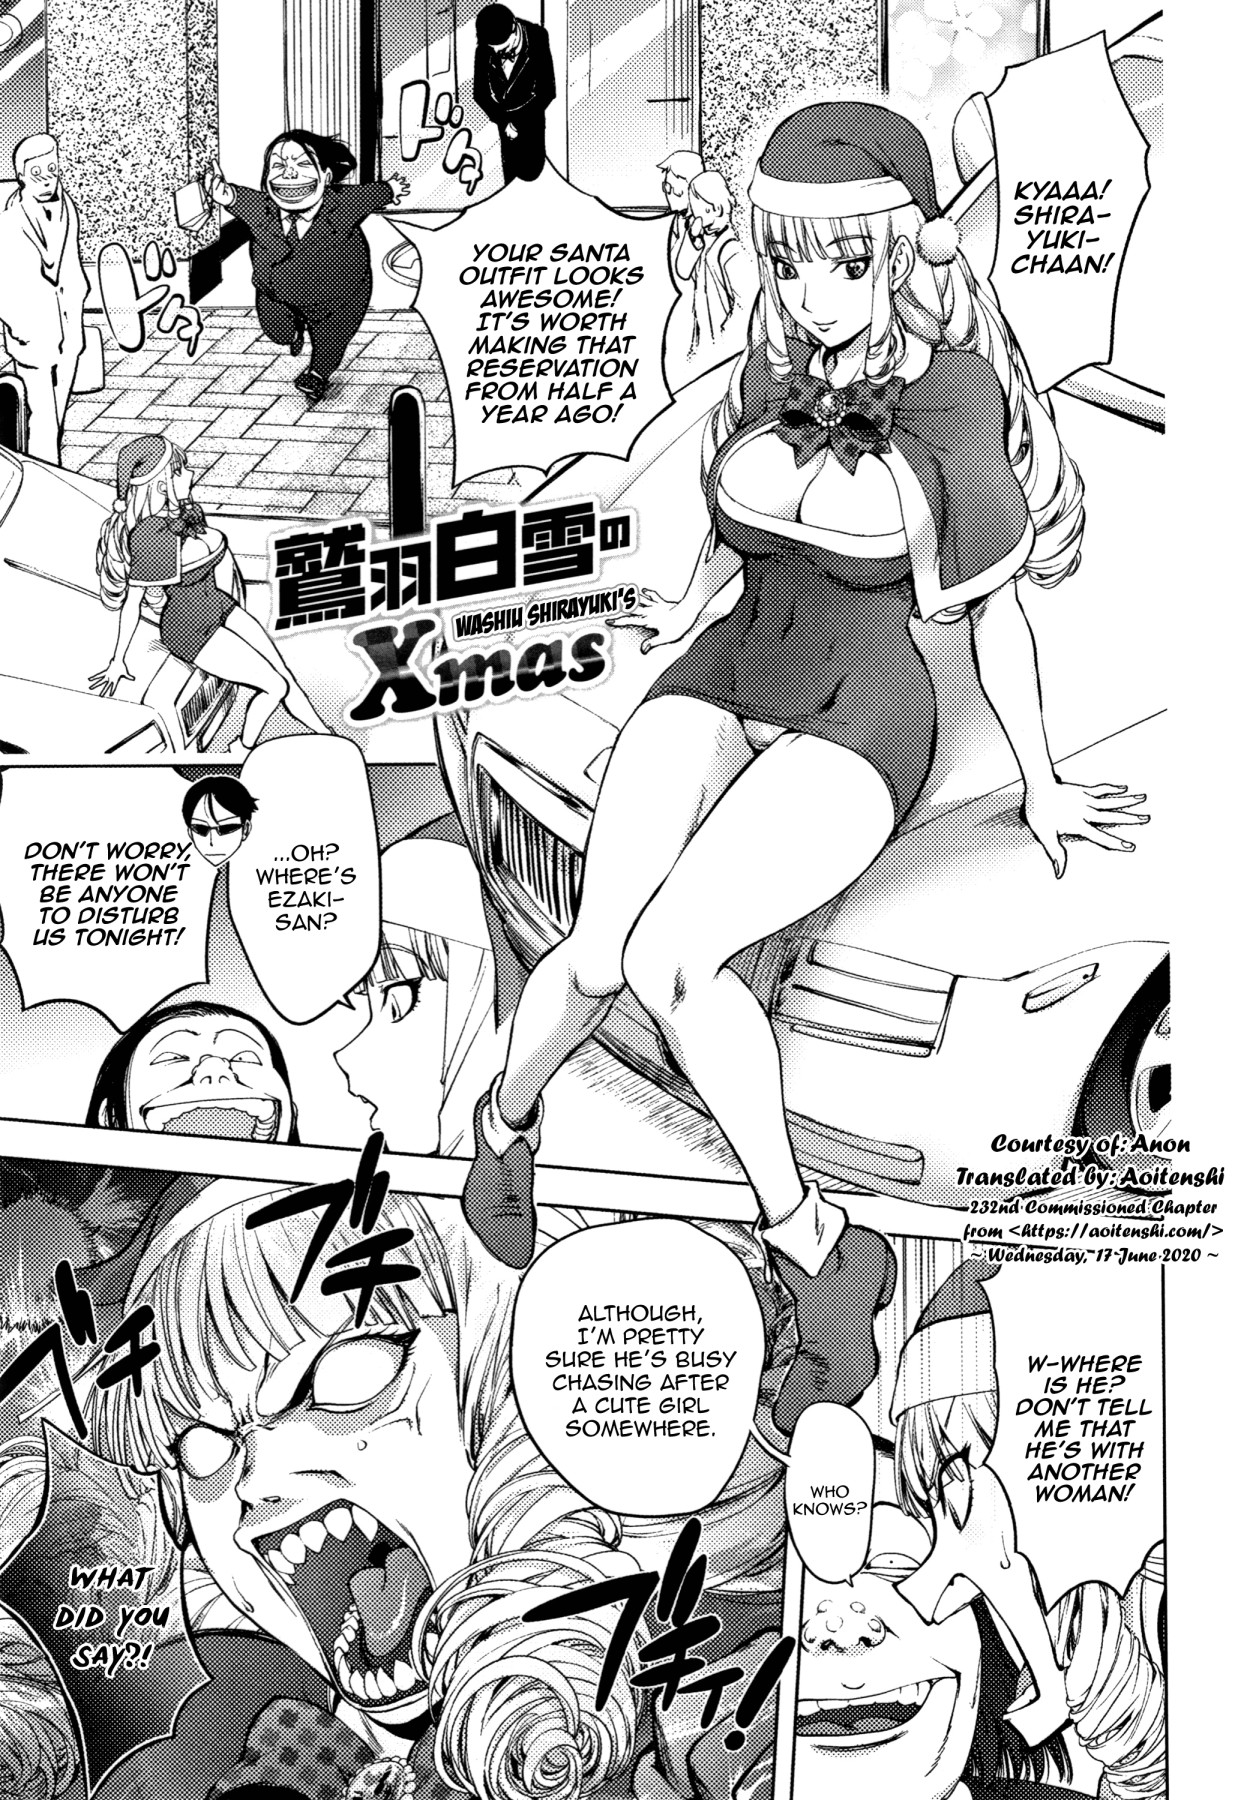 Hentai Manga Comic-Washiu Shirayuki's Xmas-Read-1